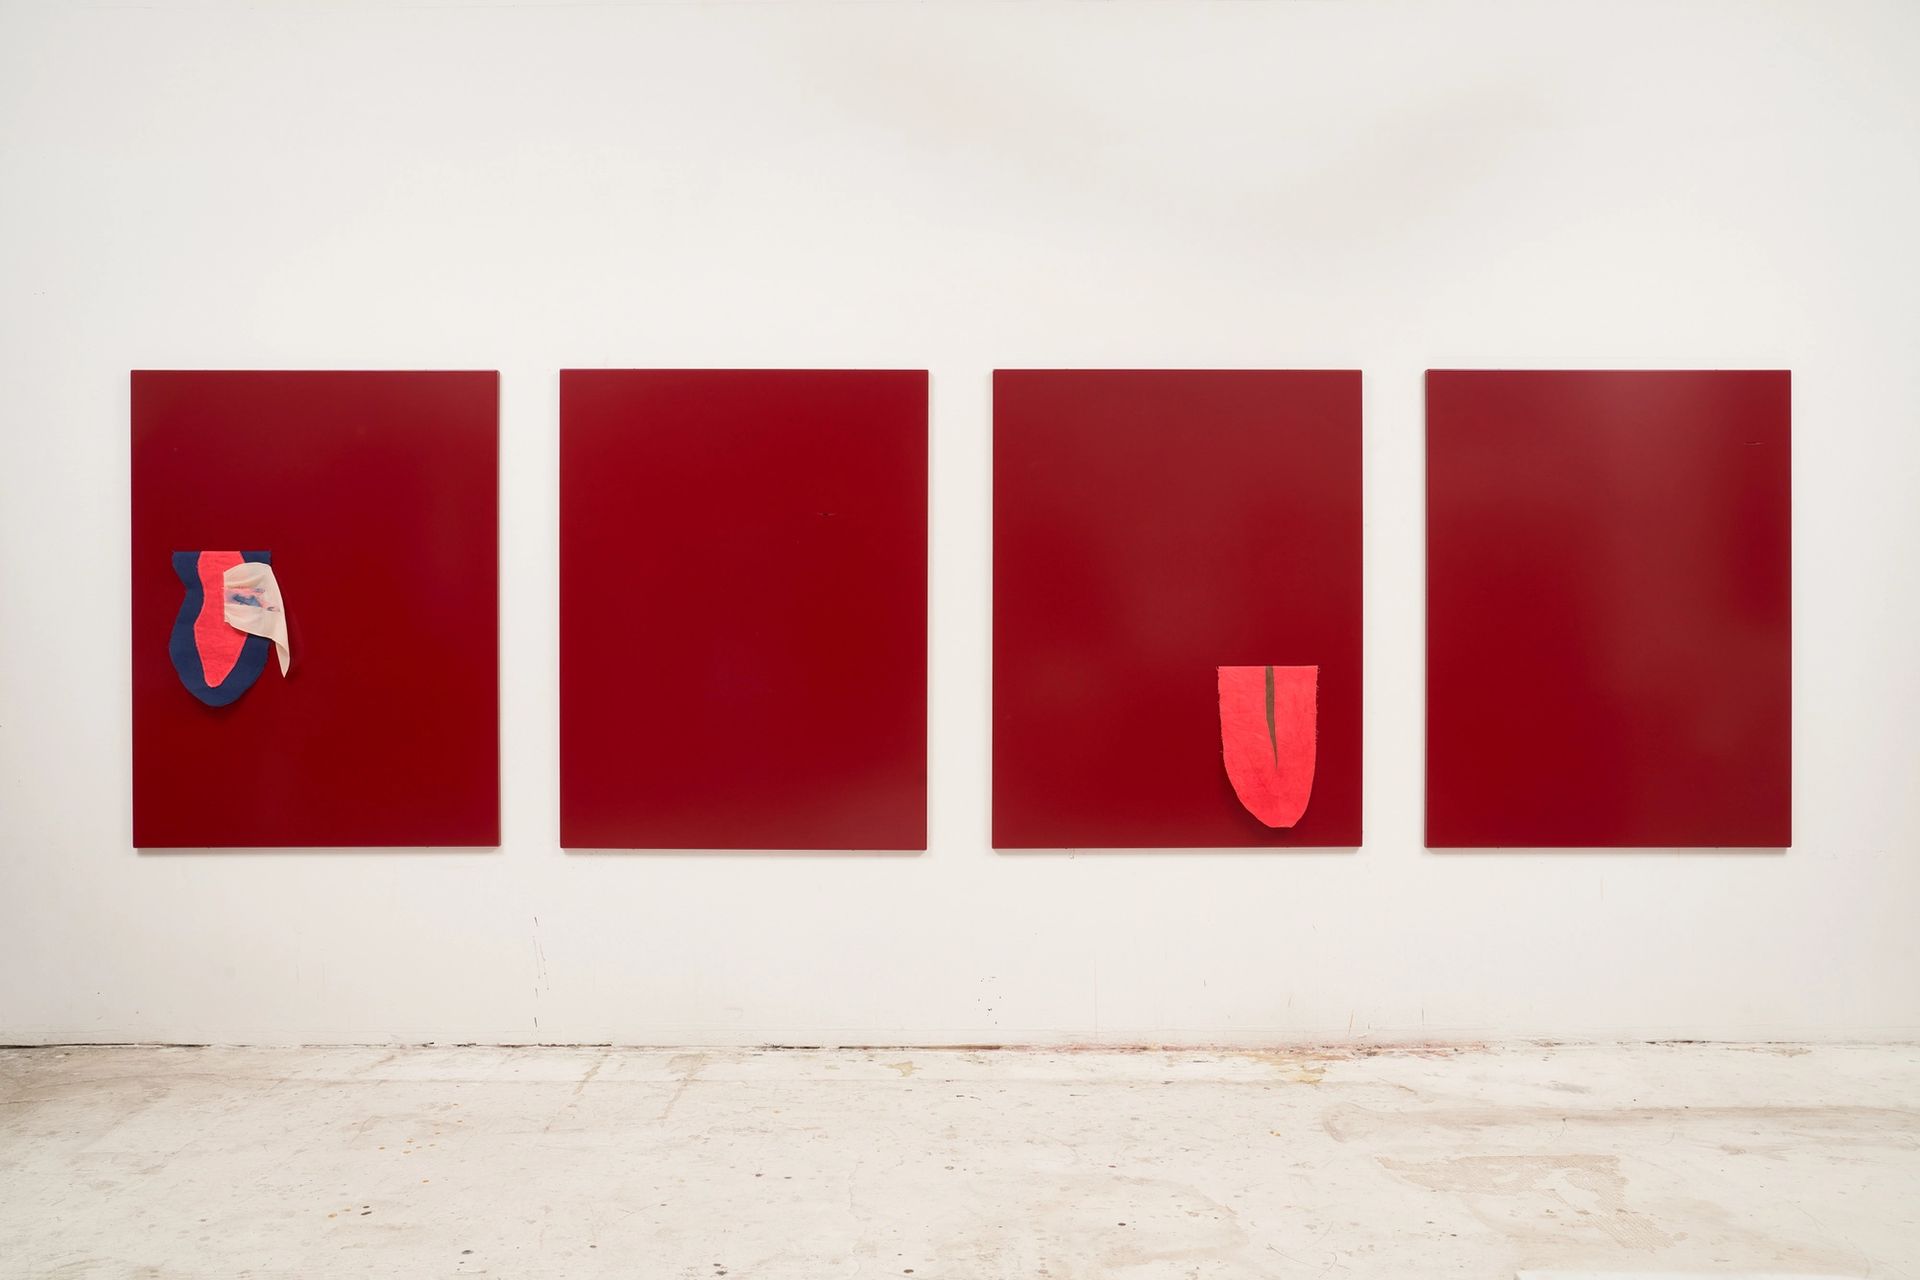 Karin und Heike, Brunch im Freien, 2021, paint and fabric collages on steel plates, 4 × 130 × 100 cm